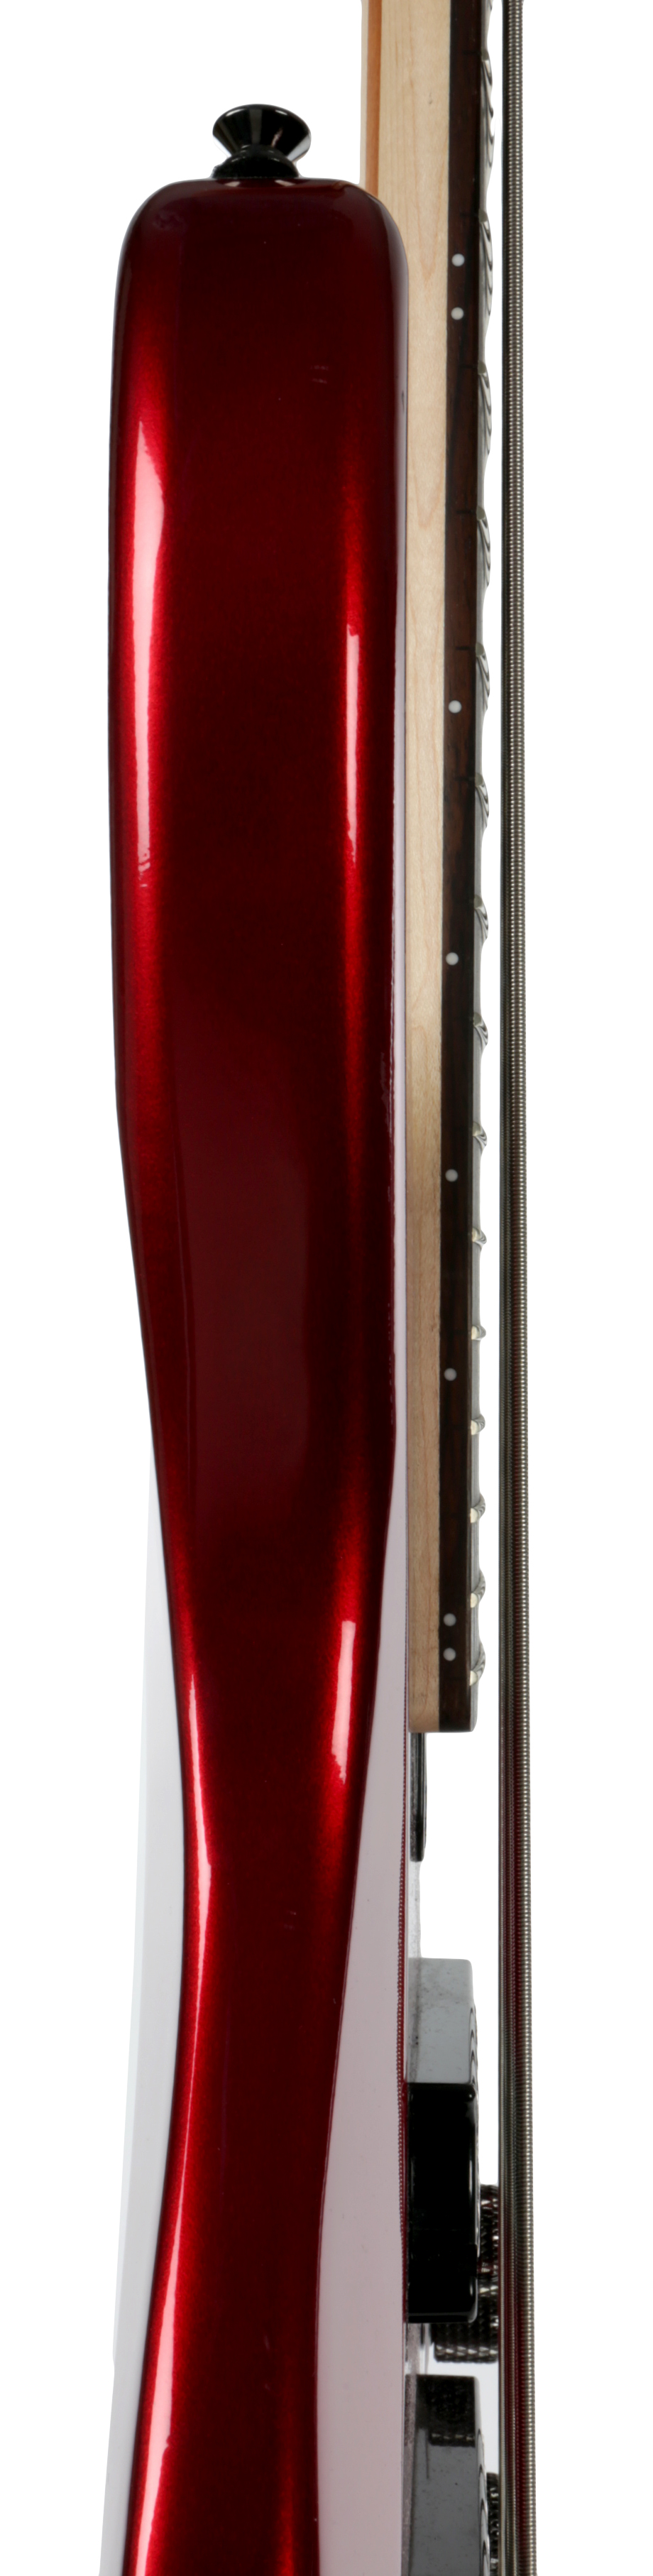 TRBX 305 Candy Apple Red 5-Saiter E-Bass